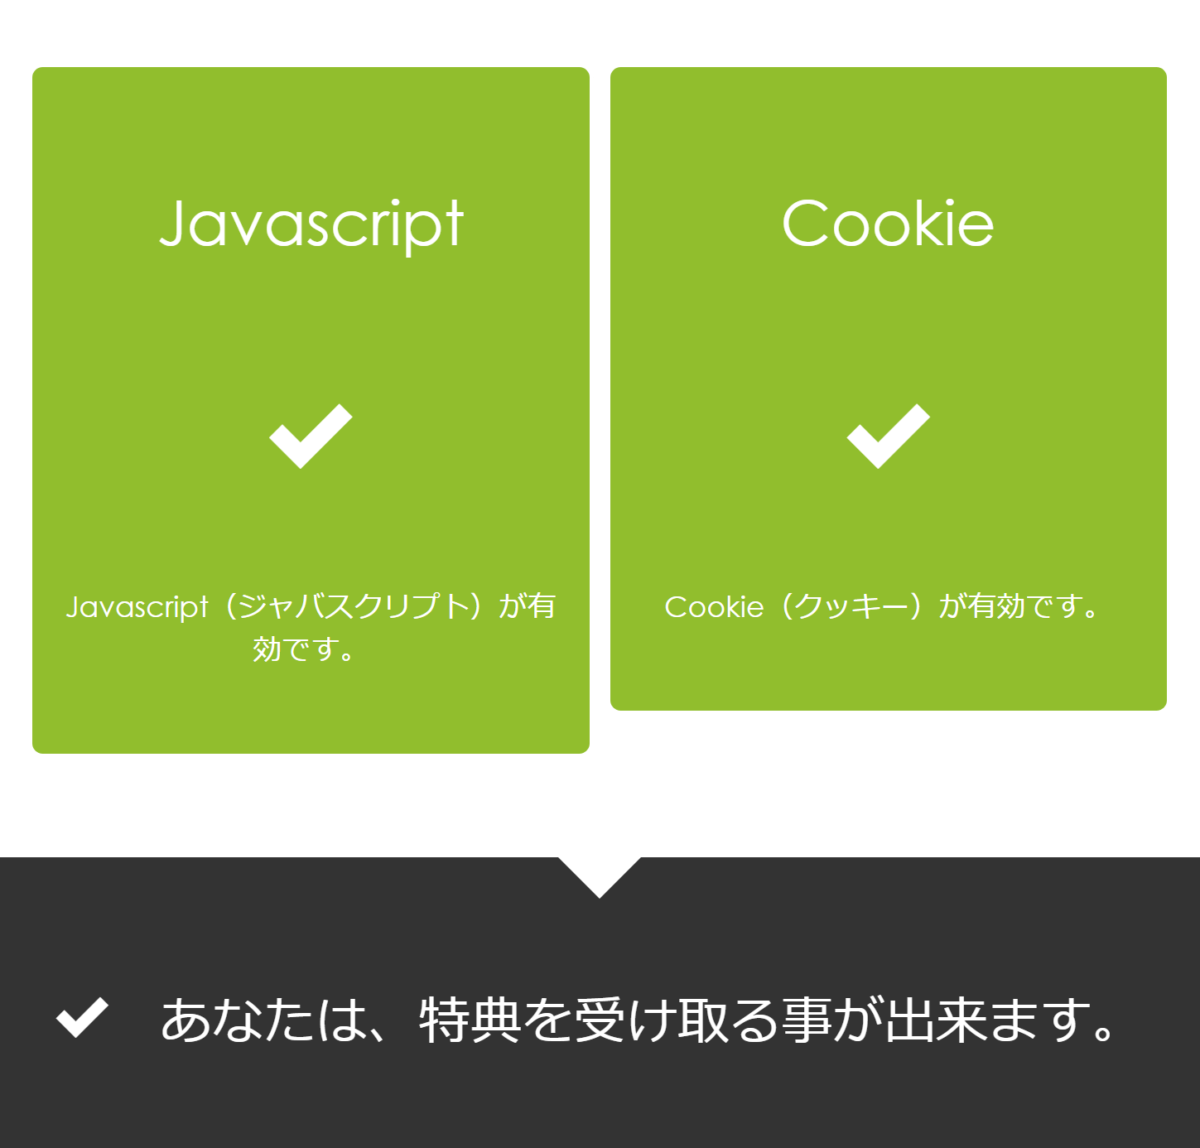 javascriptも、cookieも両方ともOKだったら特典が貰えます！